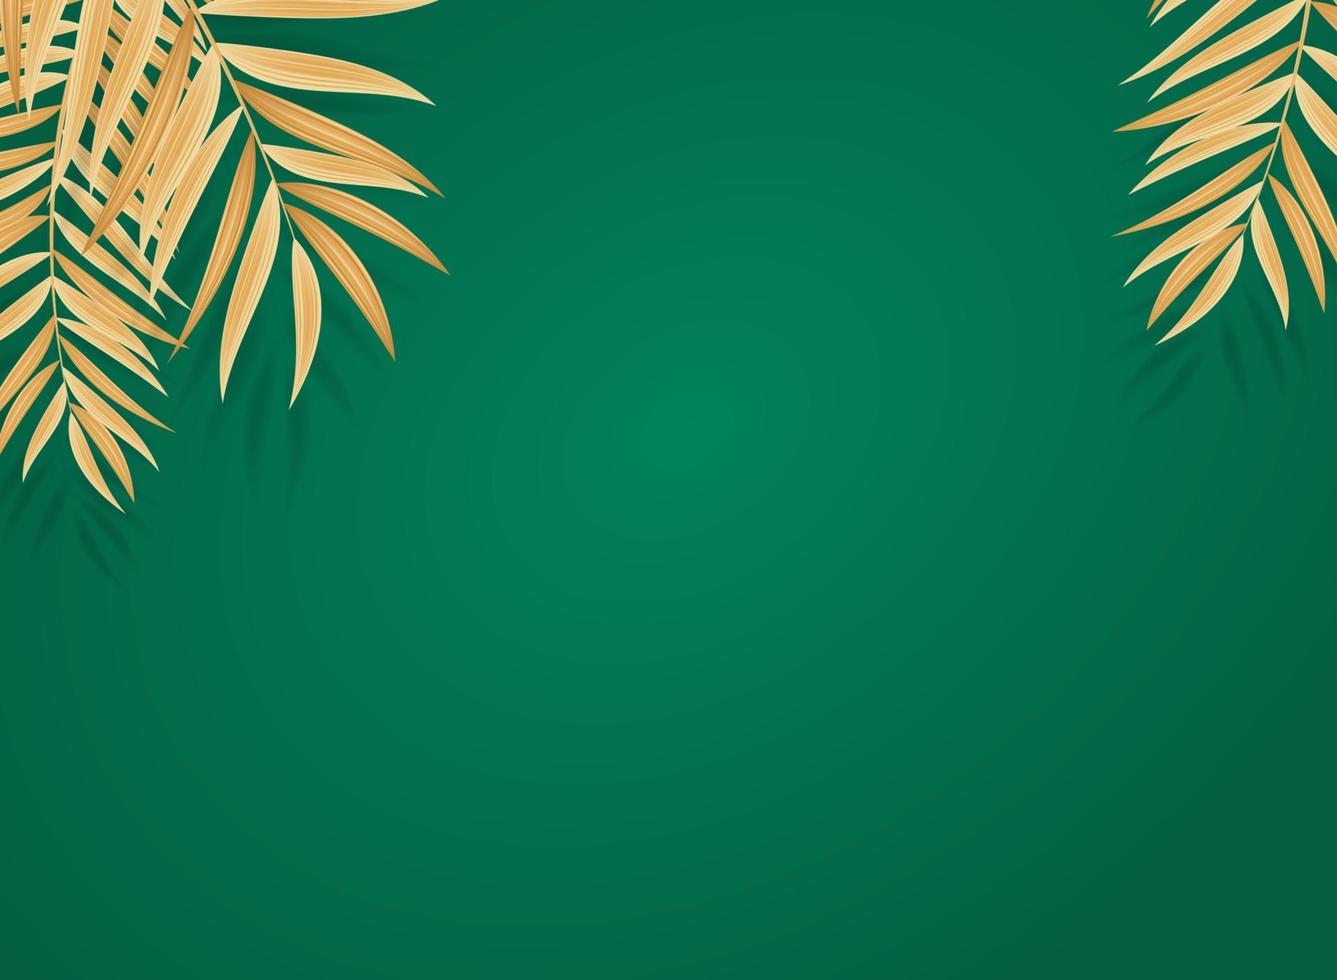 fundo tropical em folha de palmeira verde realista abstrato vetor